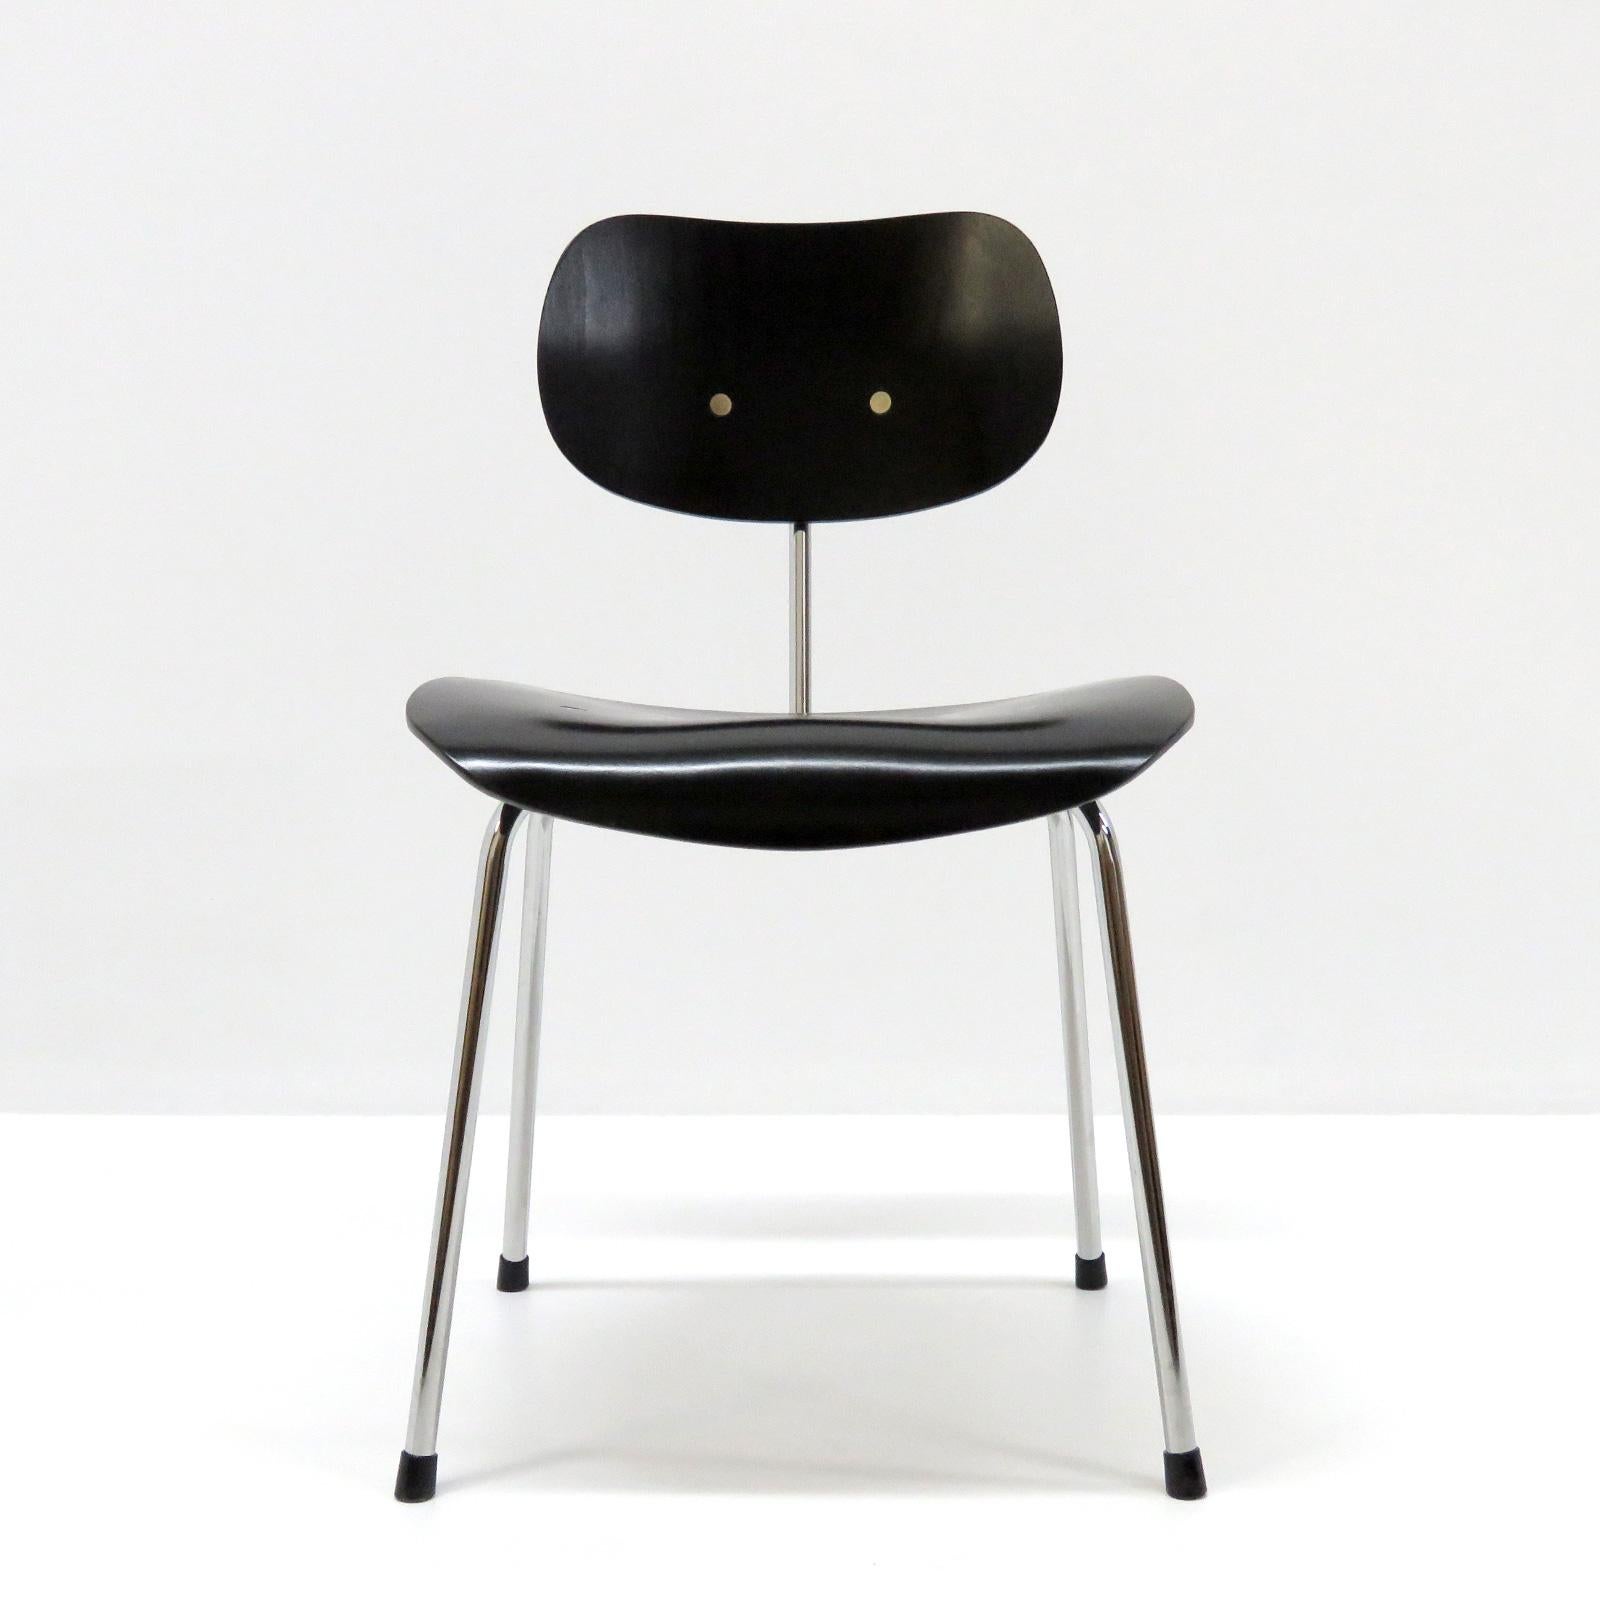 Superbe ensemble de quatre chaises de salle à manger modèle SE 68 par Egon Eiermann pour Wilde & Steele, en tube d'acier chromé avec assise ergonomique en bois peint en noir.